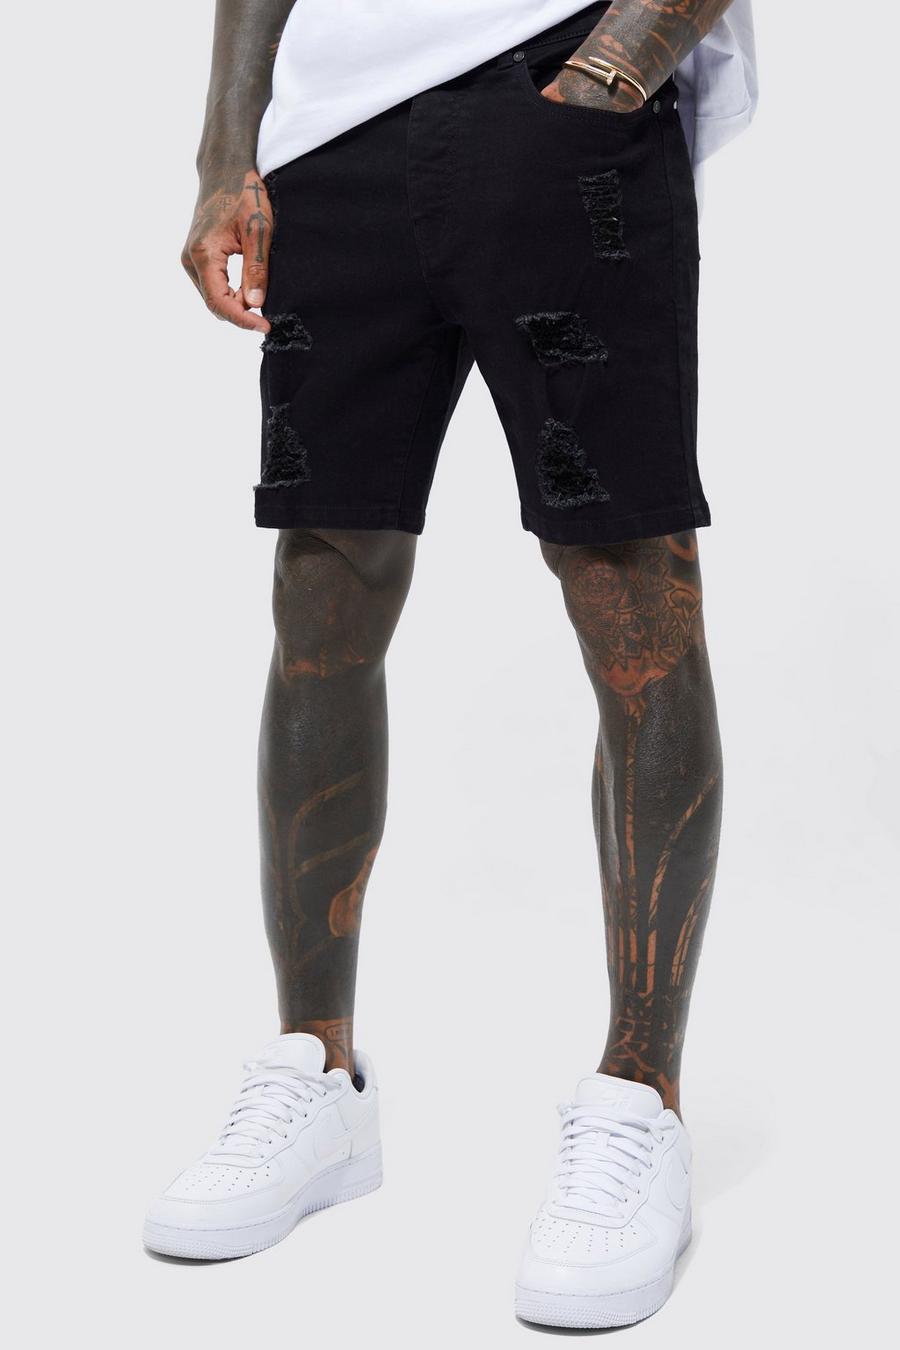 שחור אמיתי שורט סקיני מבד ג'ינס נמתח עם קרעים מרובים 